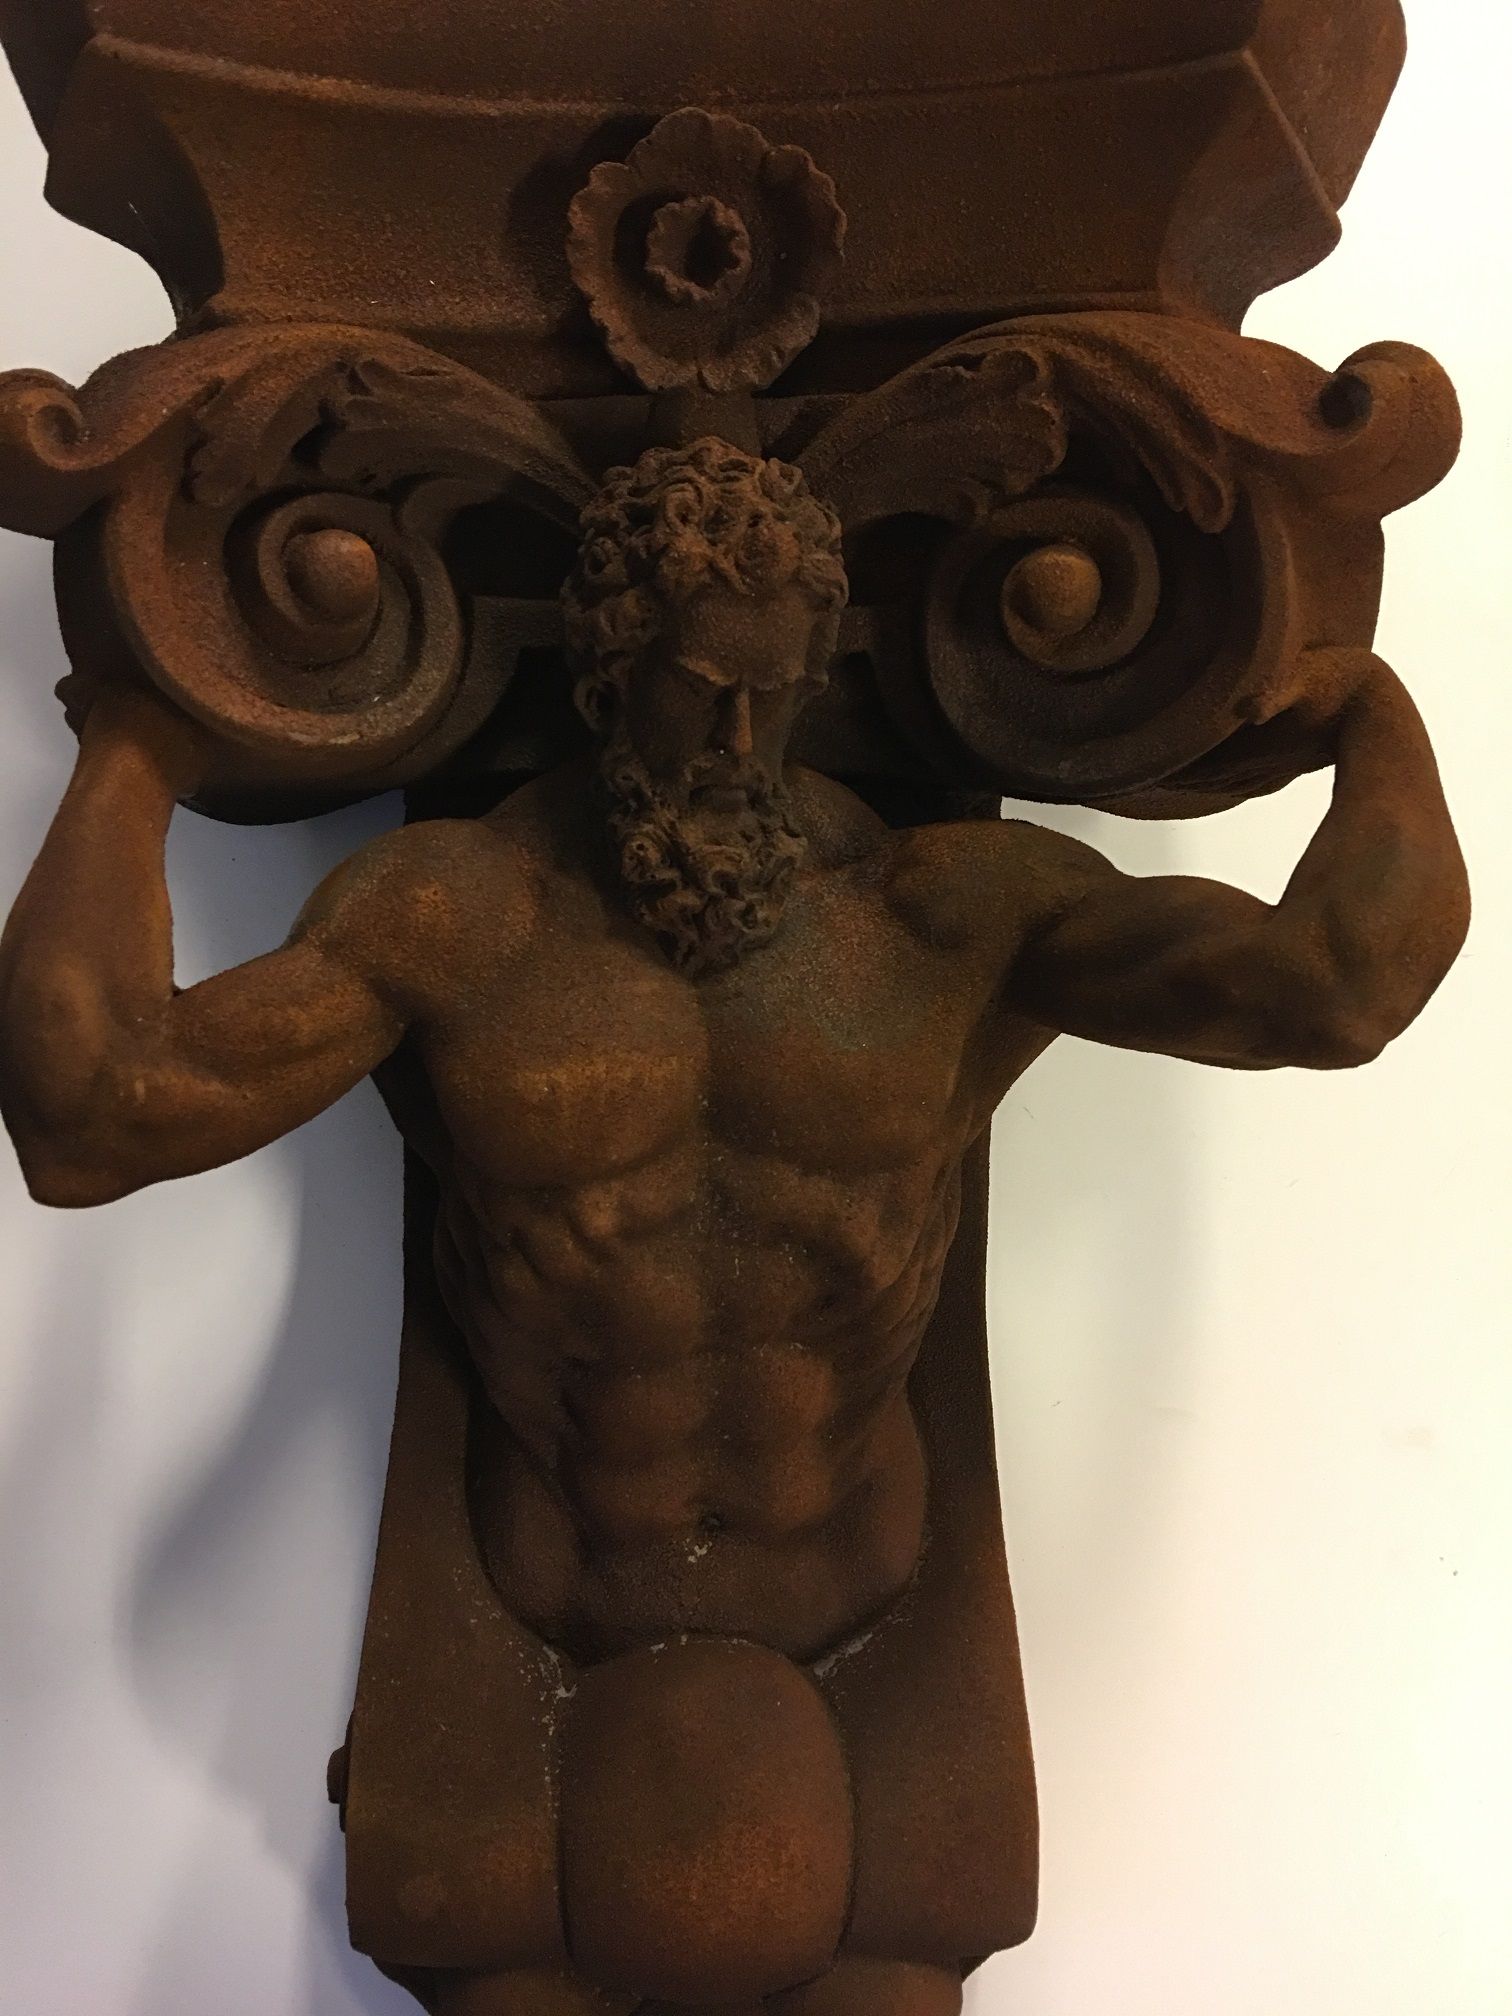 Zeer opvallende muurbeugel -ornament met gragende man, Polystone-rust